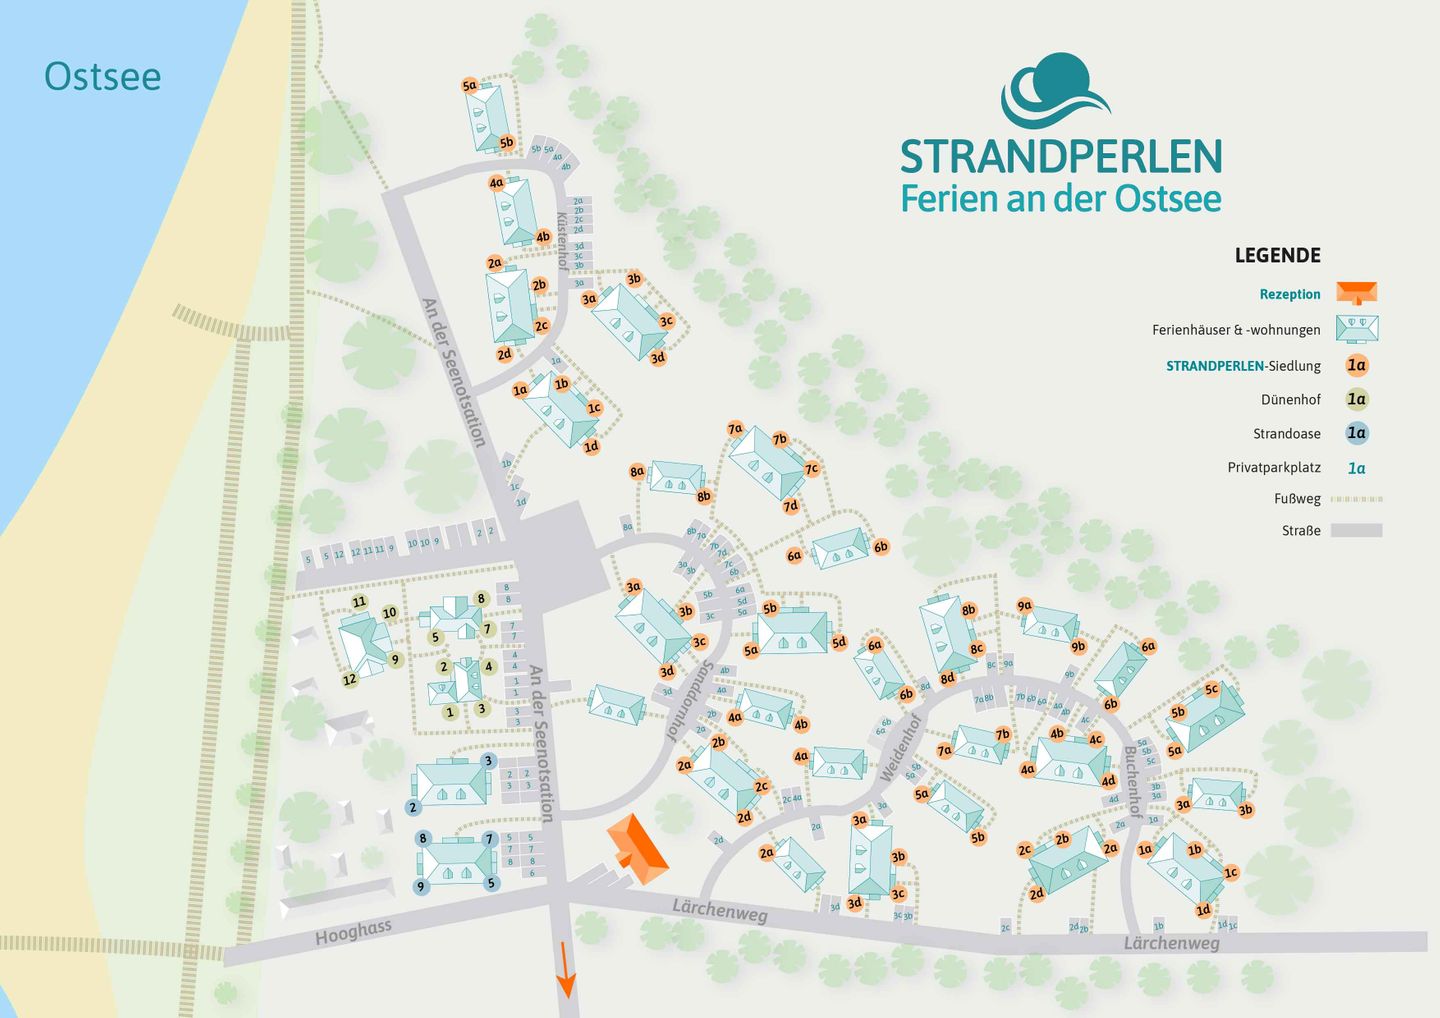 Lageplan Dünenhof, STRANDPERLEN-Siedlung, STRANDOASE